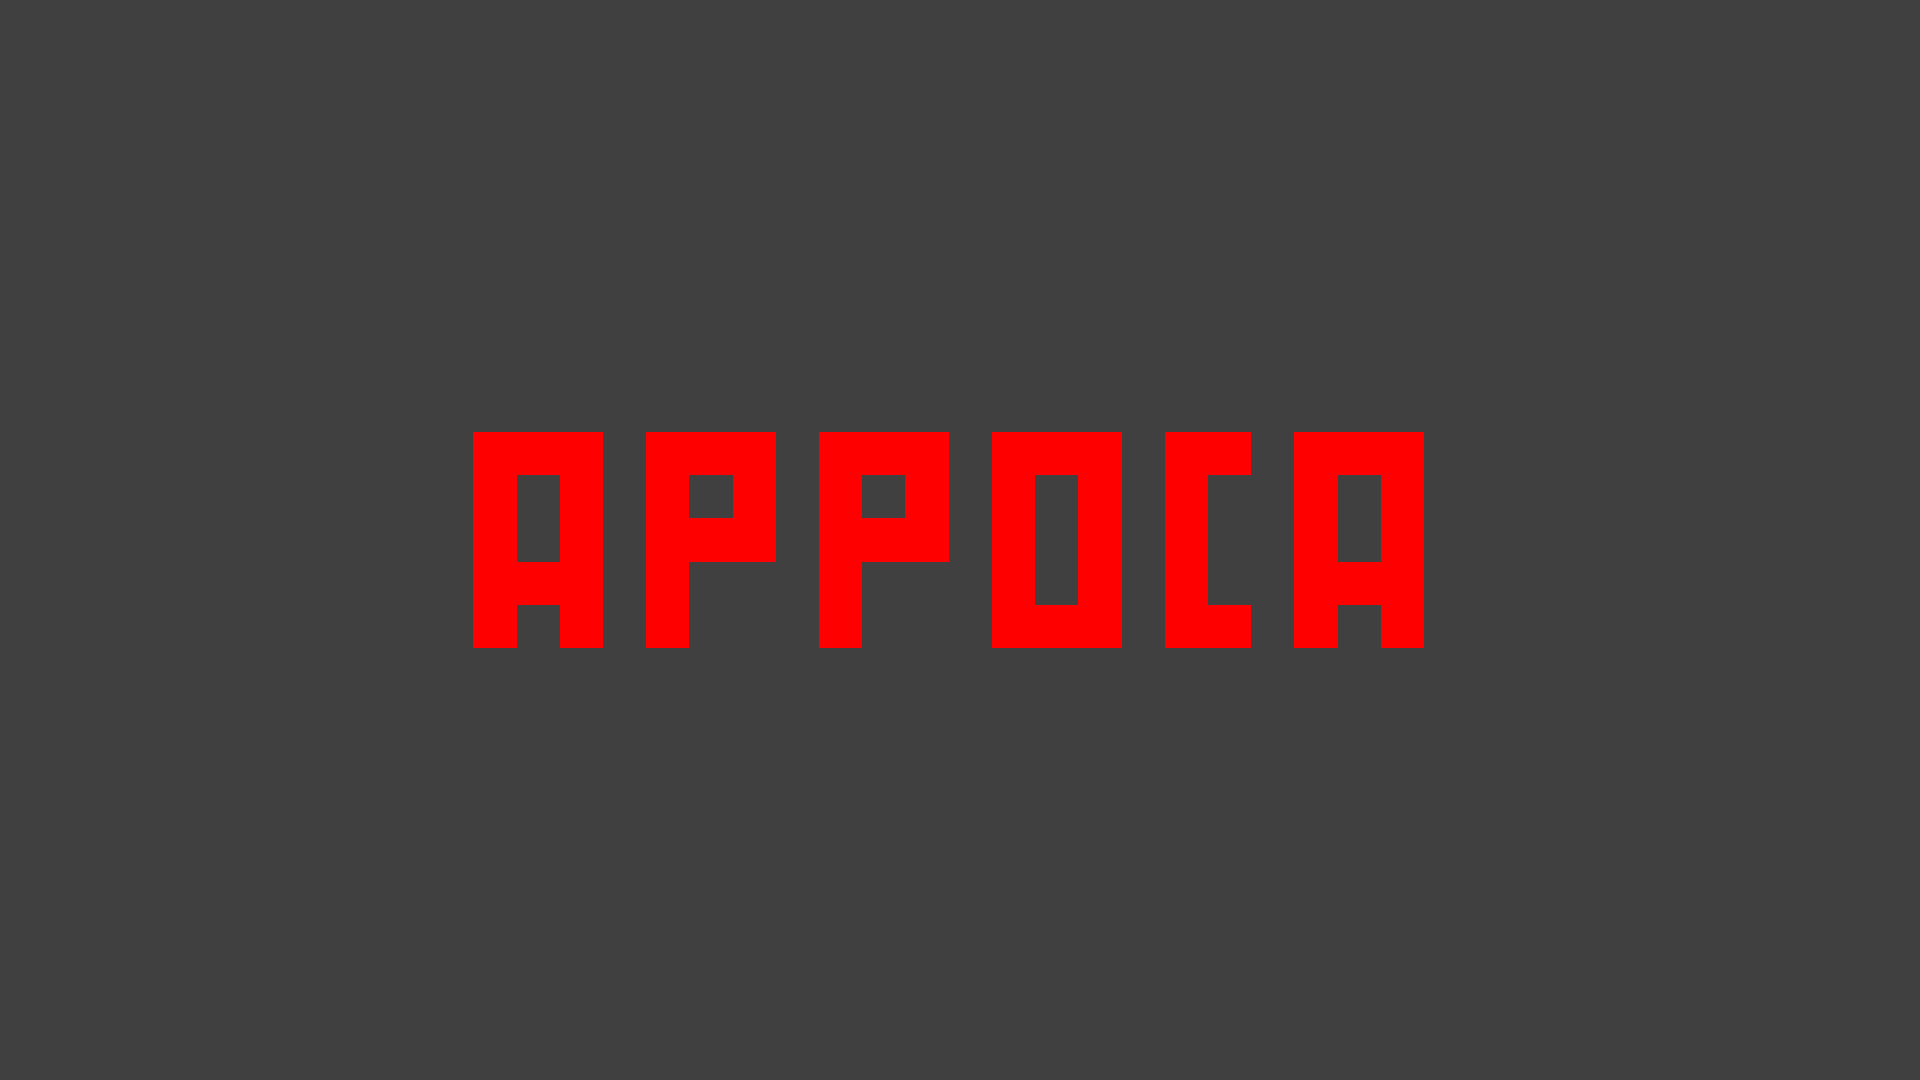 Appoca: It was a mistake